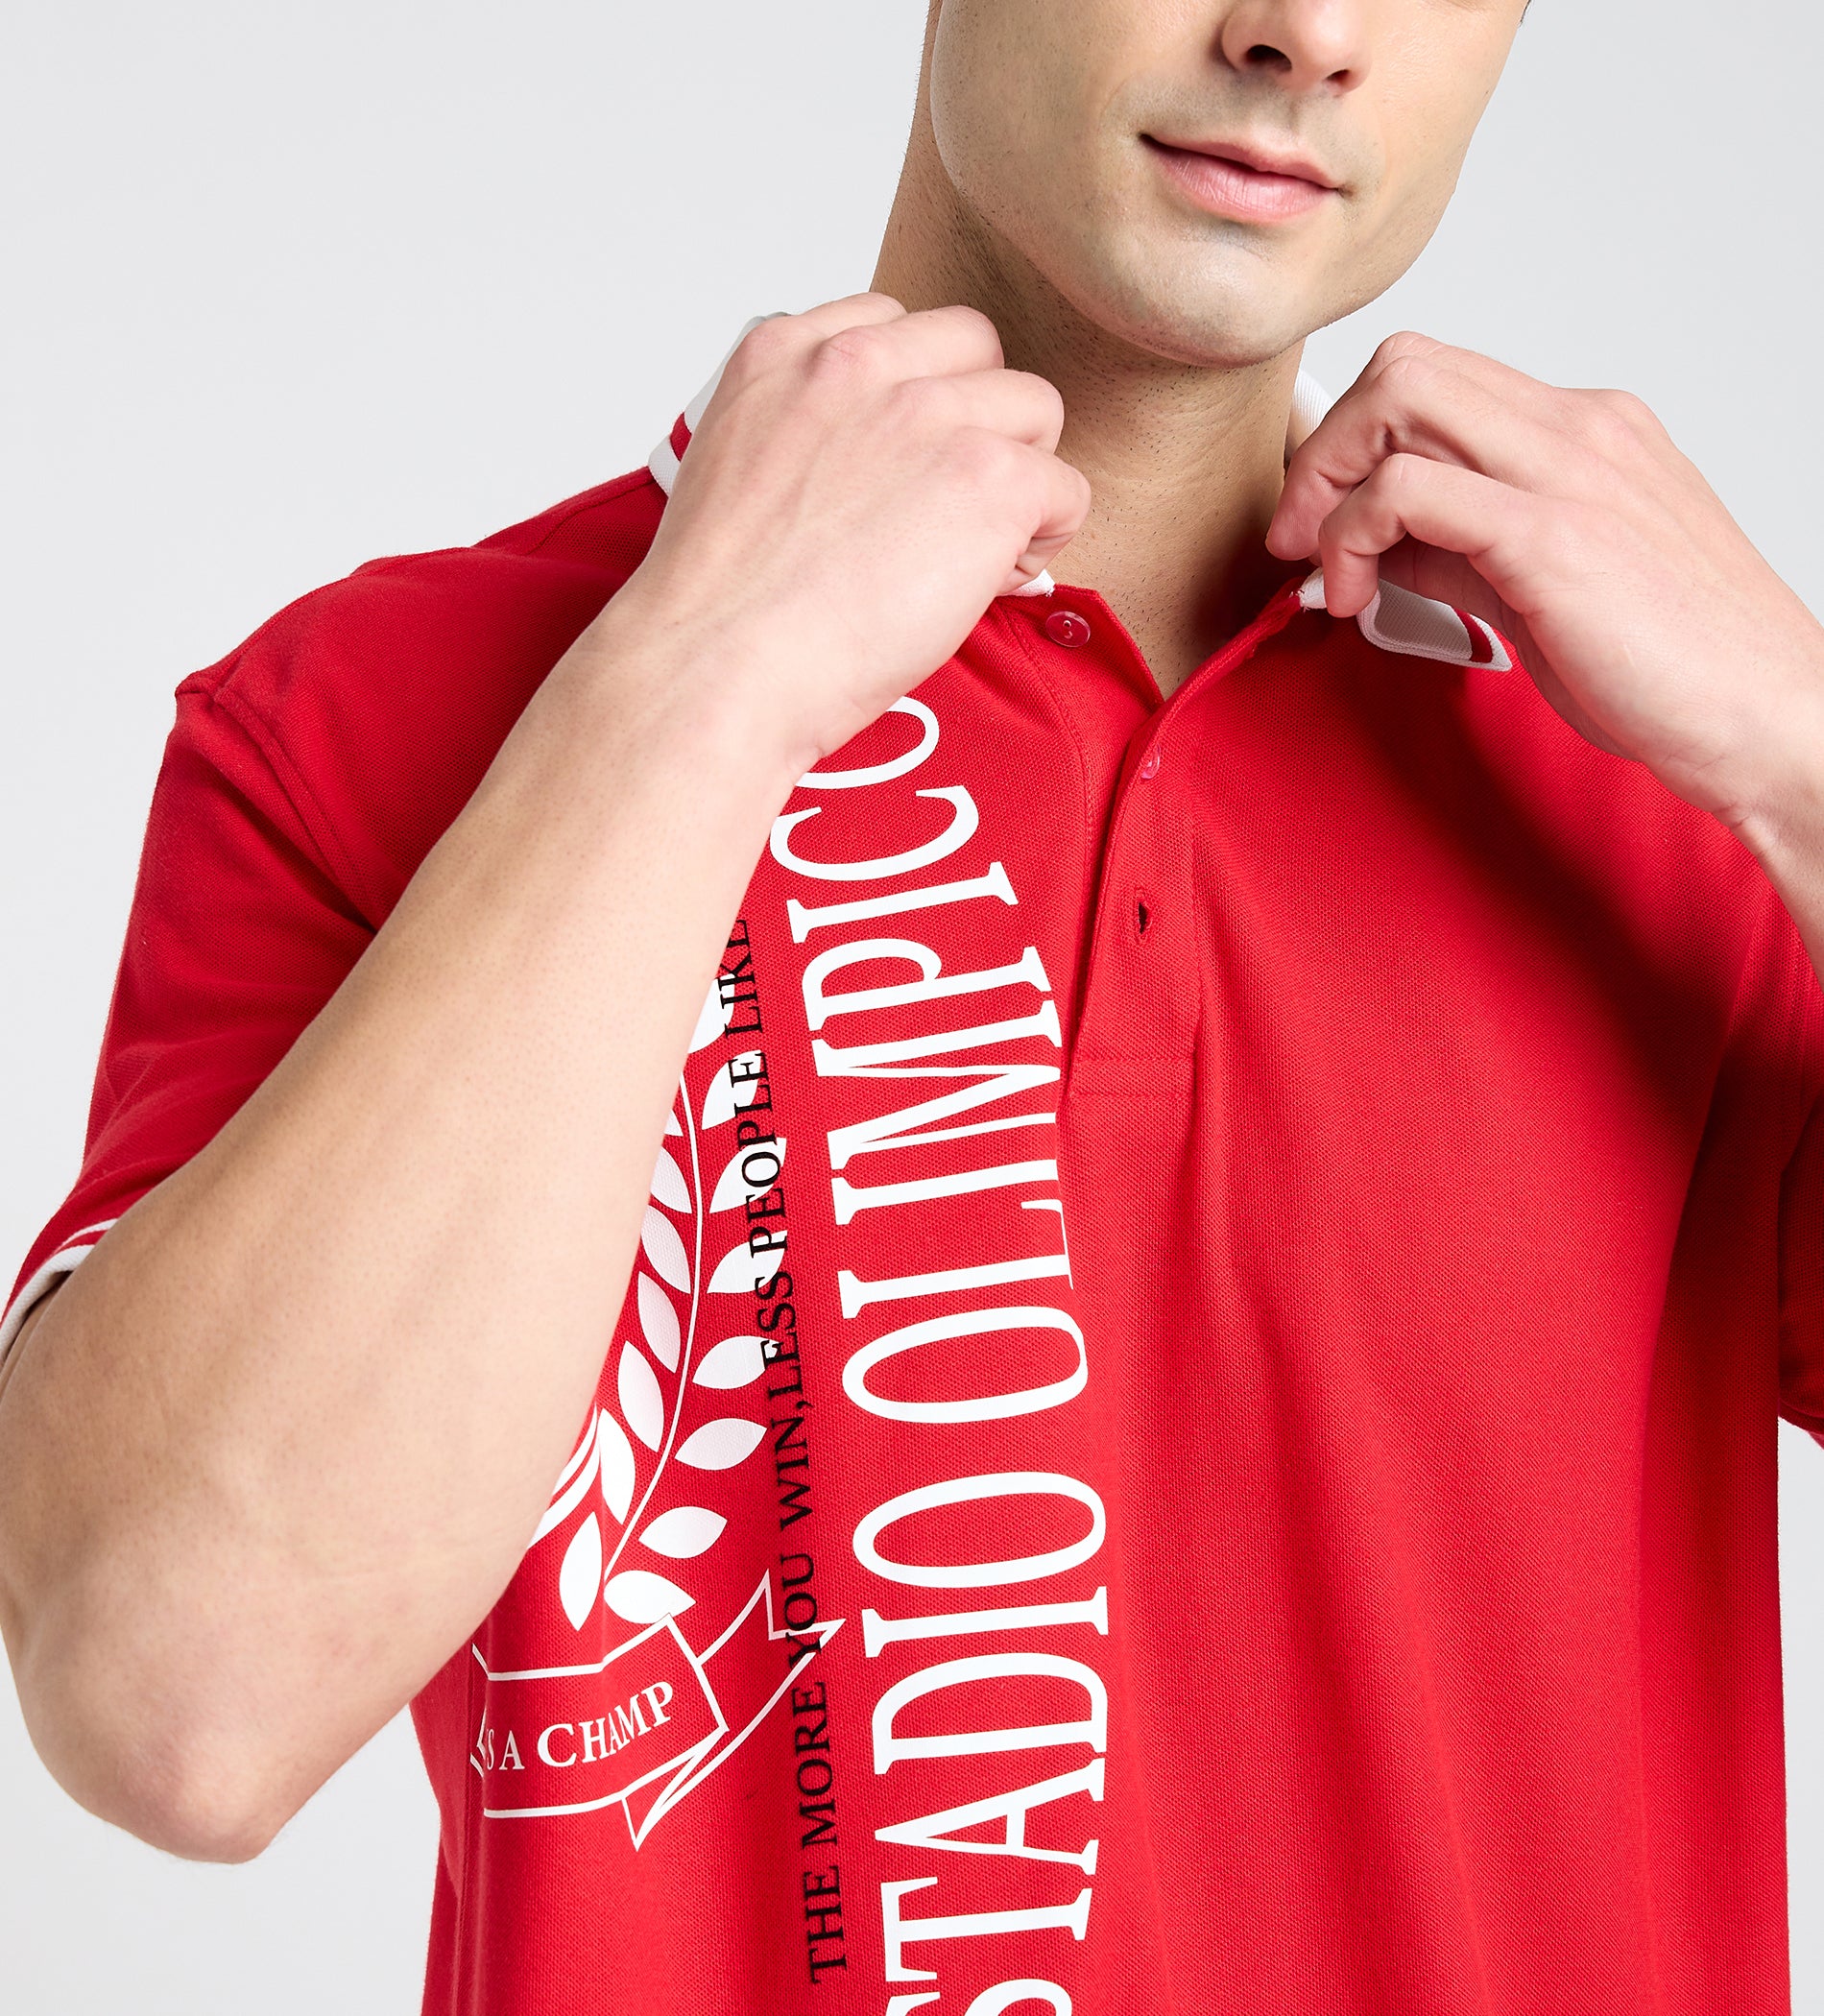 Red 21 Polo T-shirt For Men - EDRIO